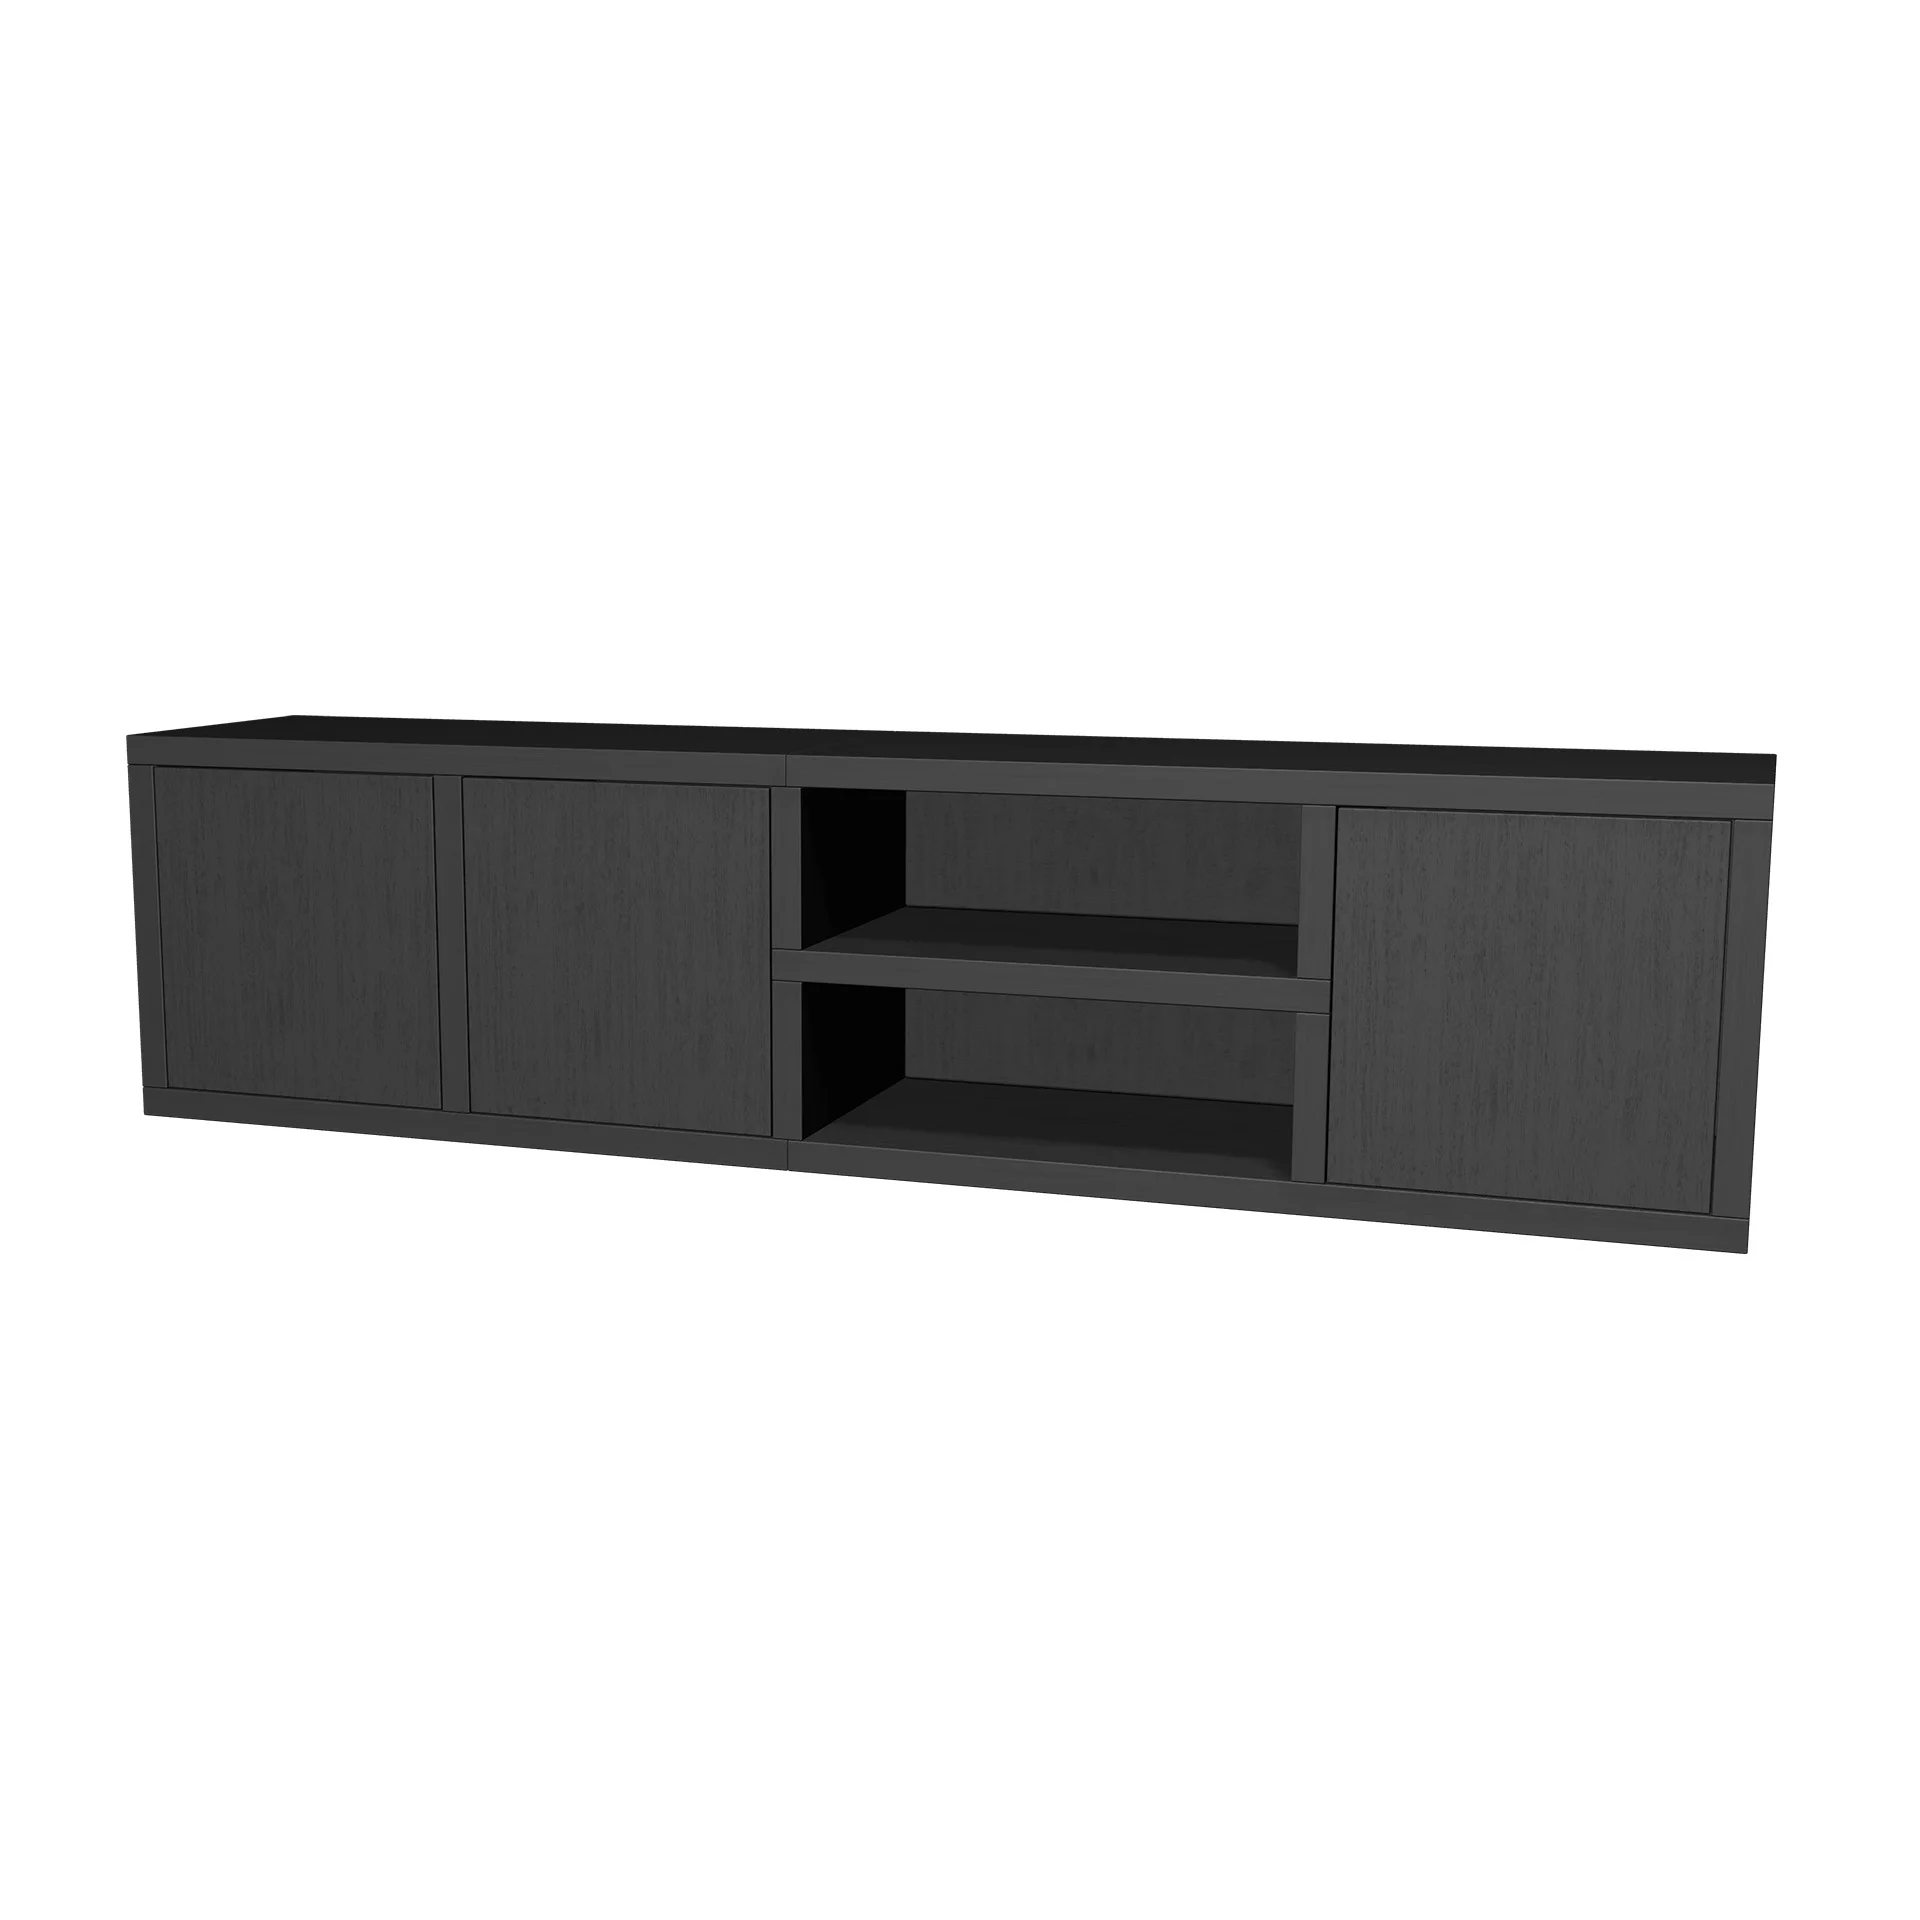 TSFC023 en panneau de meubles en chêne noir